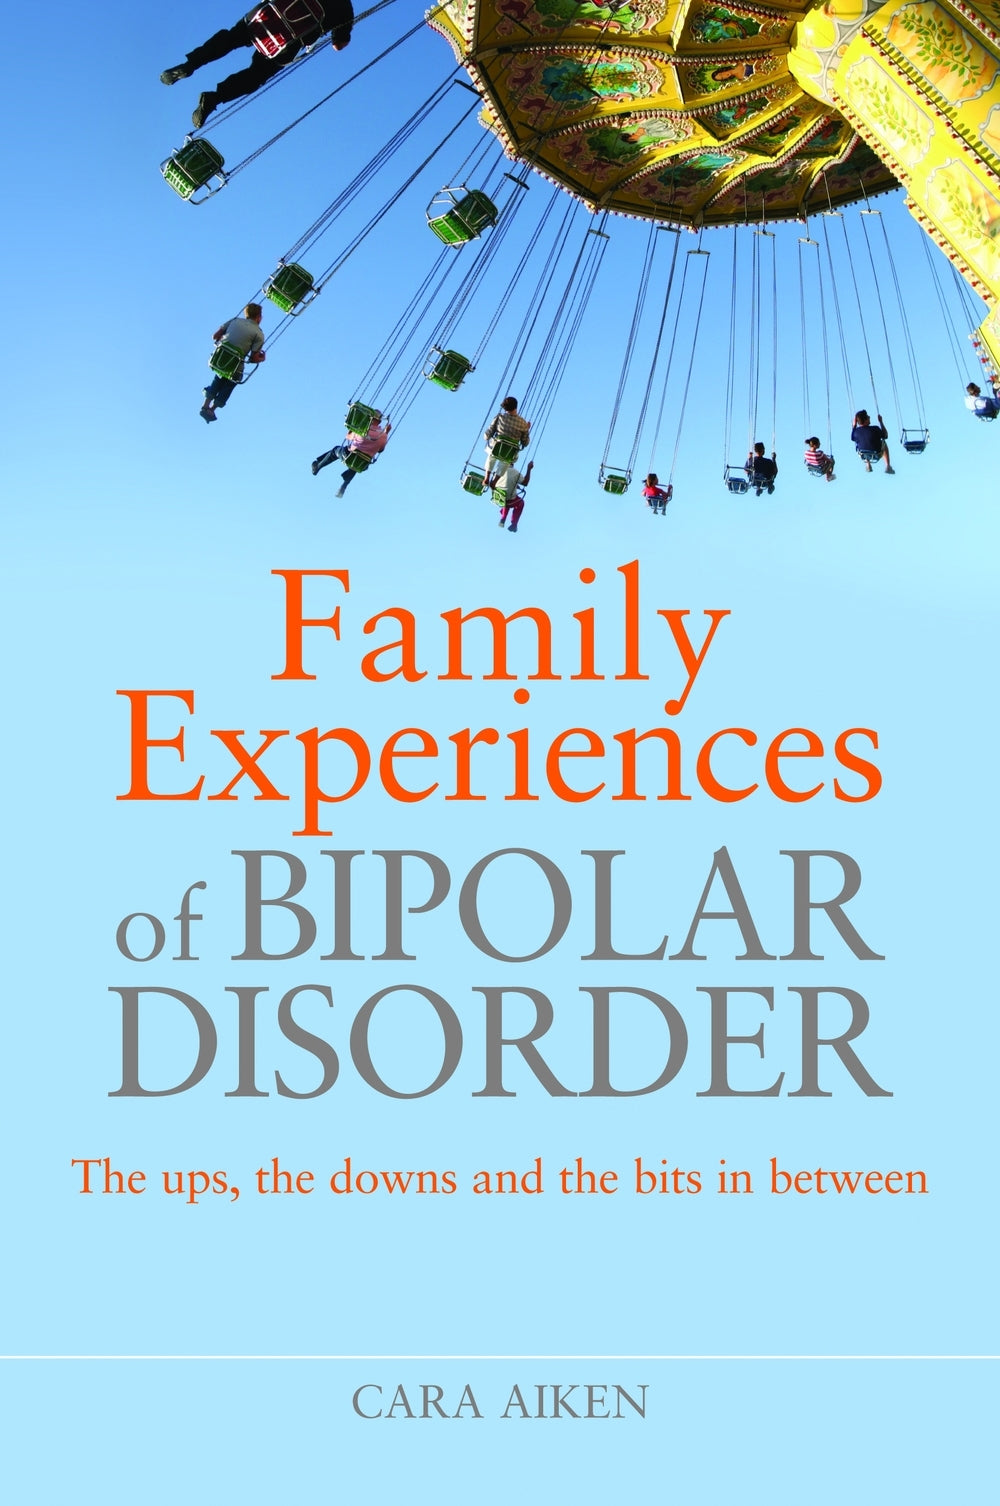 Family Experiences of Bipolar Disorder by Cara Aiken